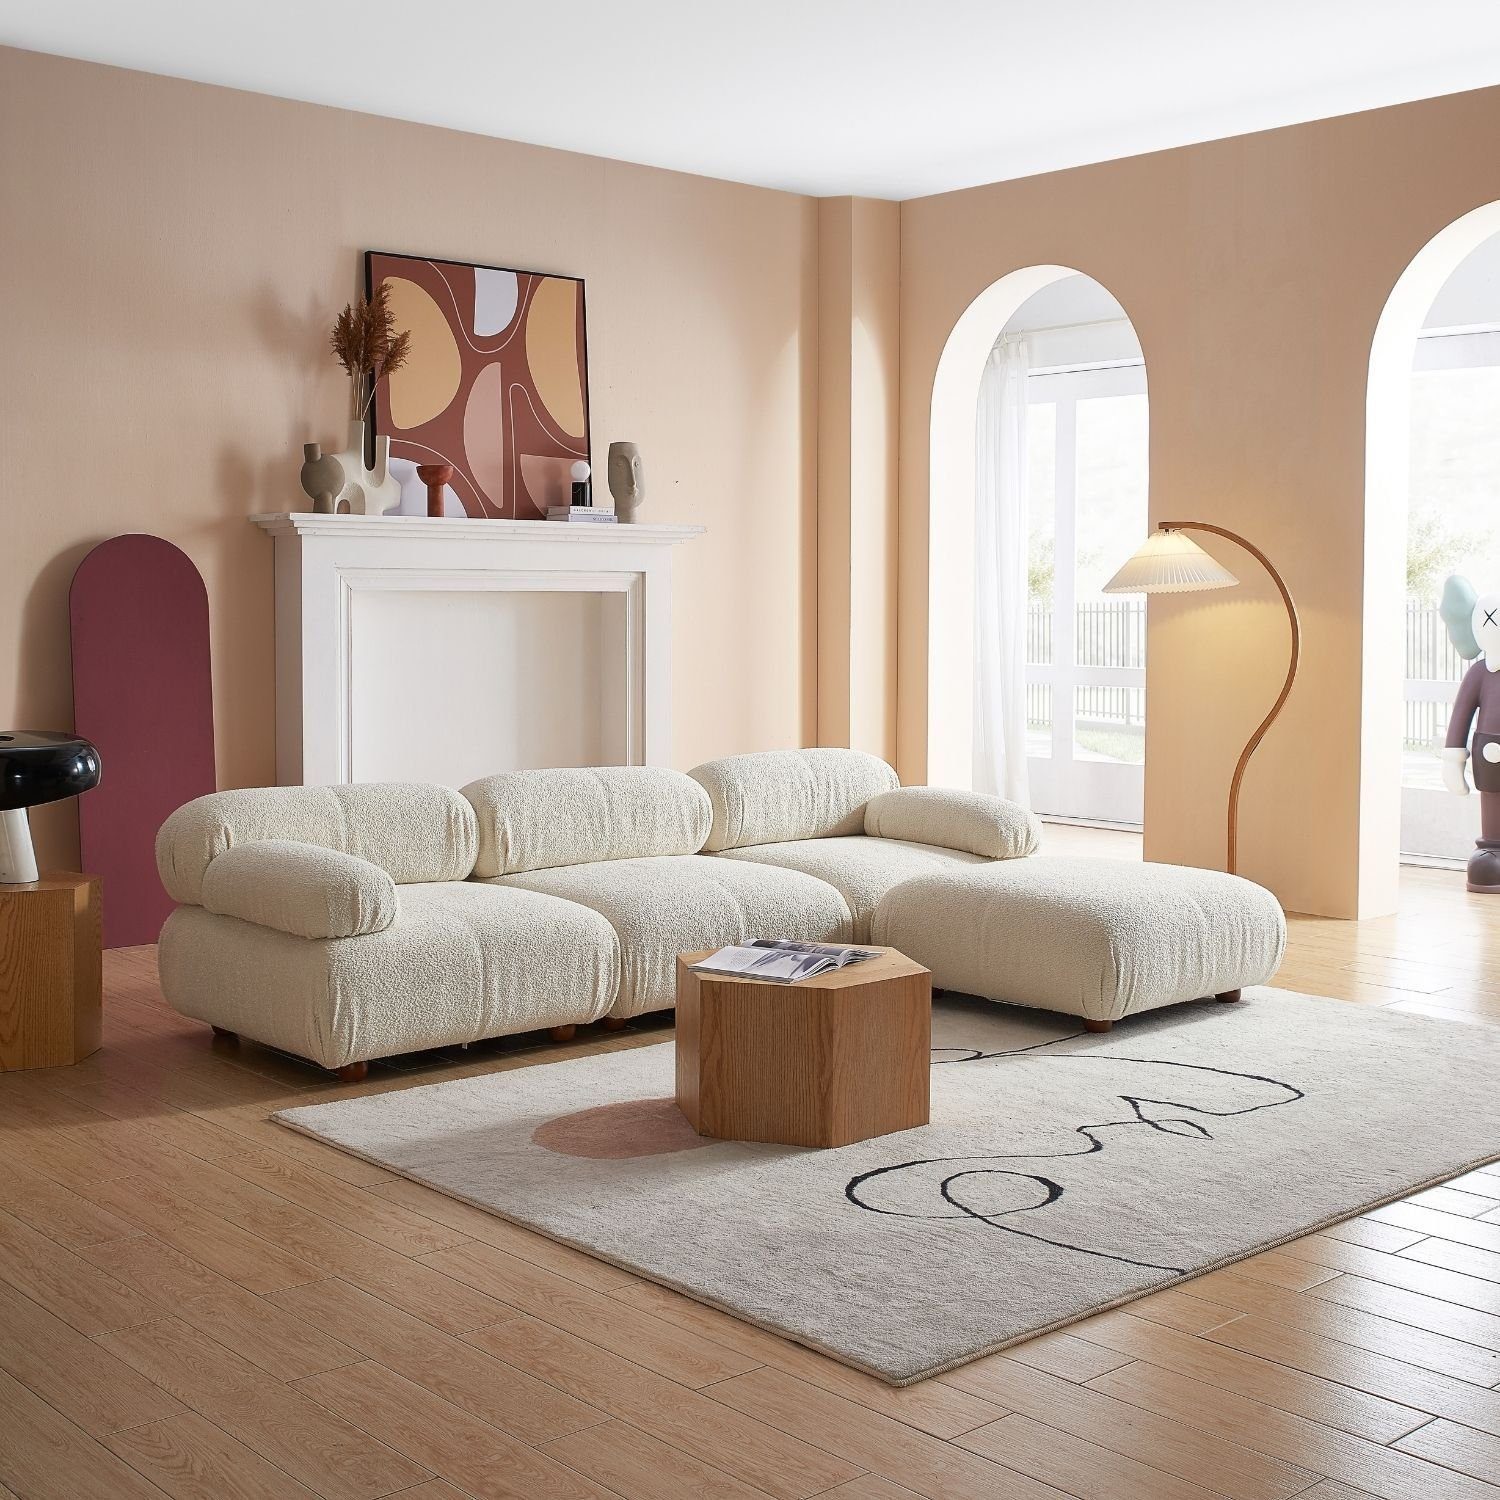 Touch me im Aufbau aus Komfortschaum Generation enthalten! Preis Weiß-Lieferung Sofa neueste Sitzmöbel Knuffiges und